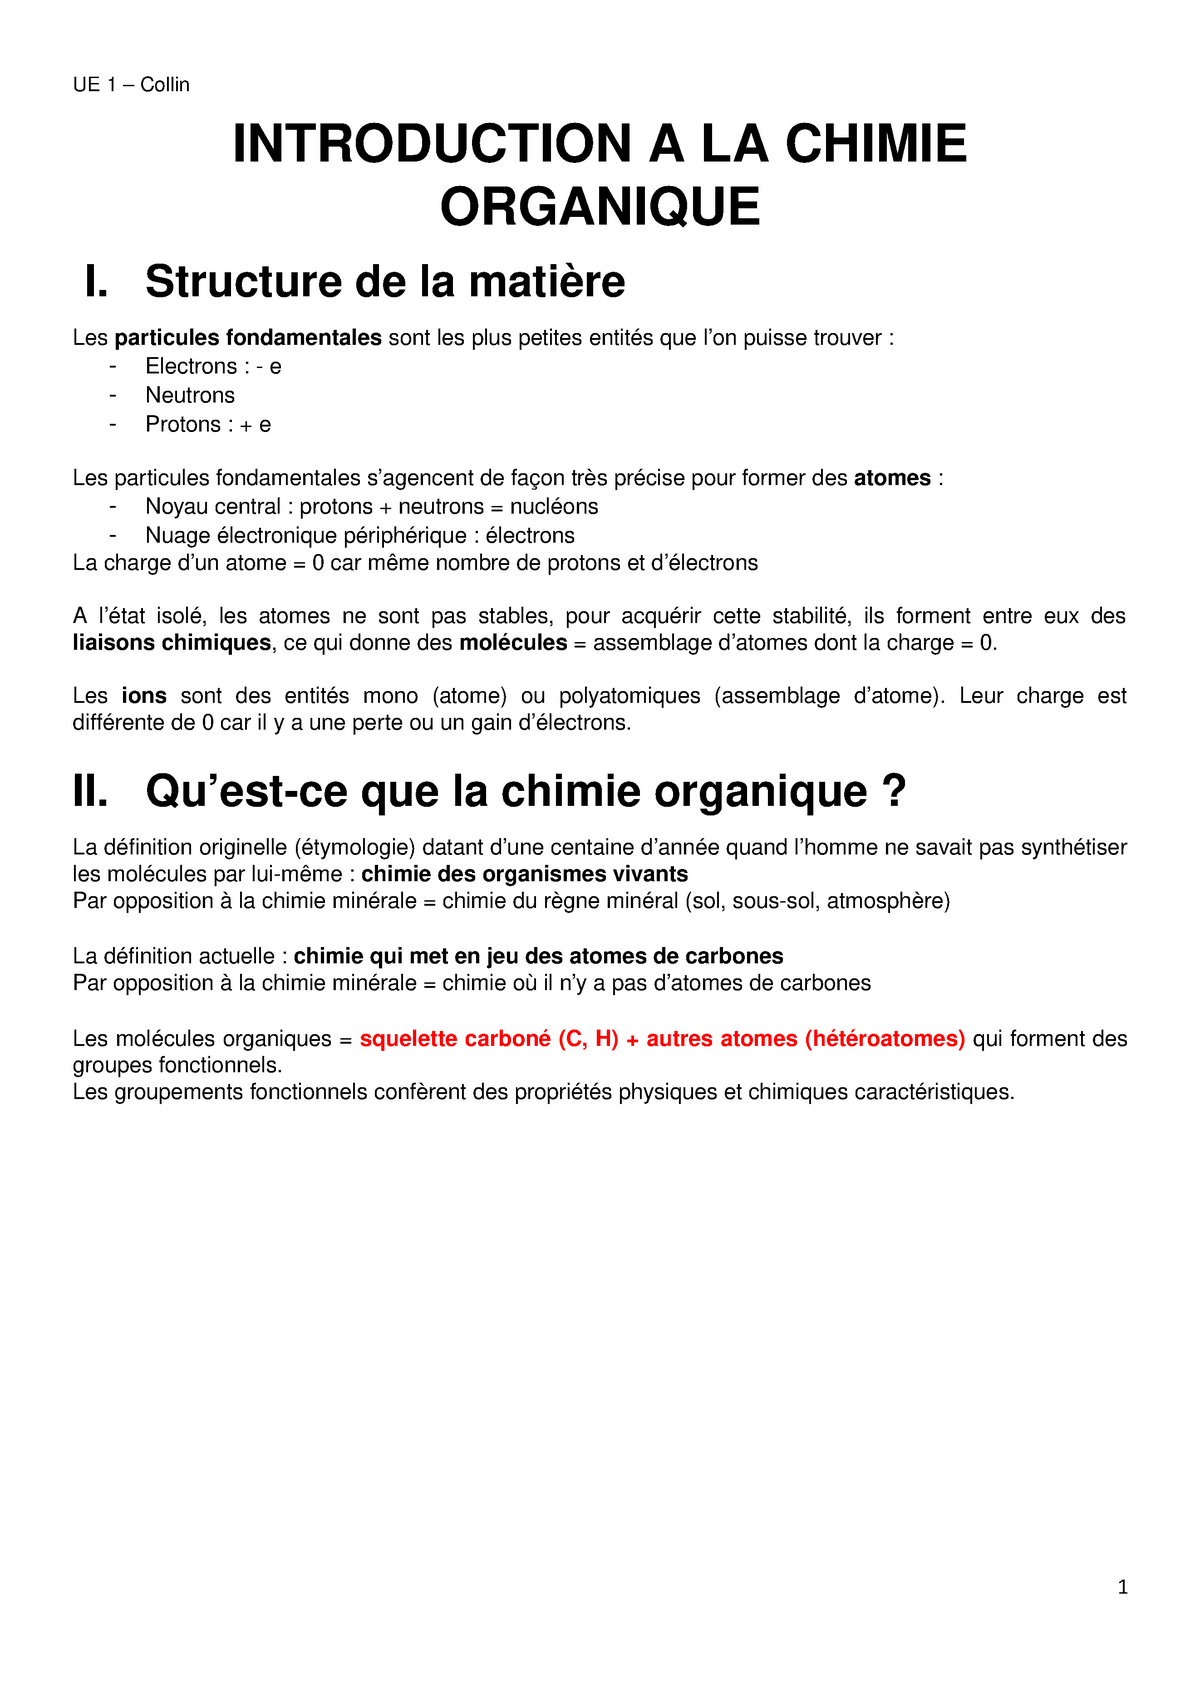 Ch 1 Introduction A La Chimie Organique Studocu